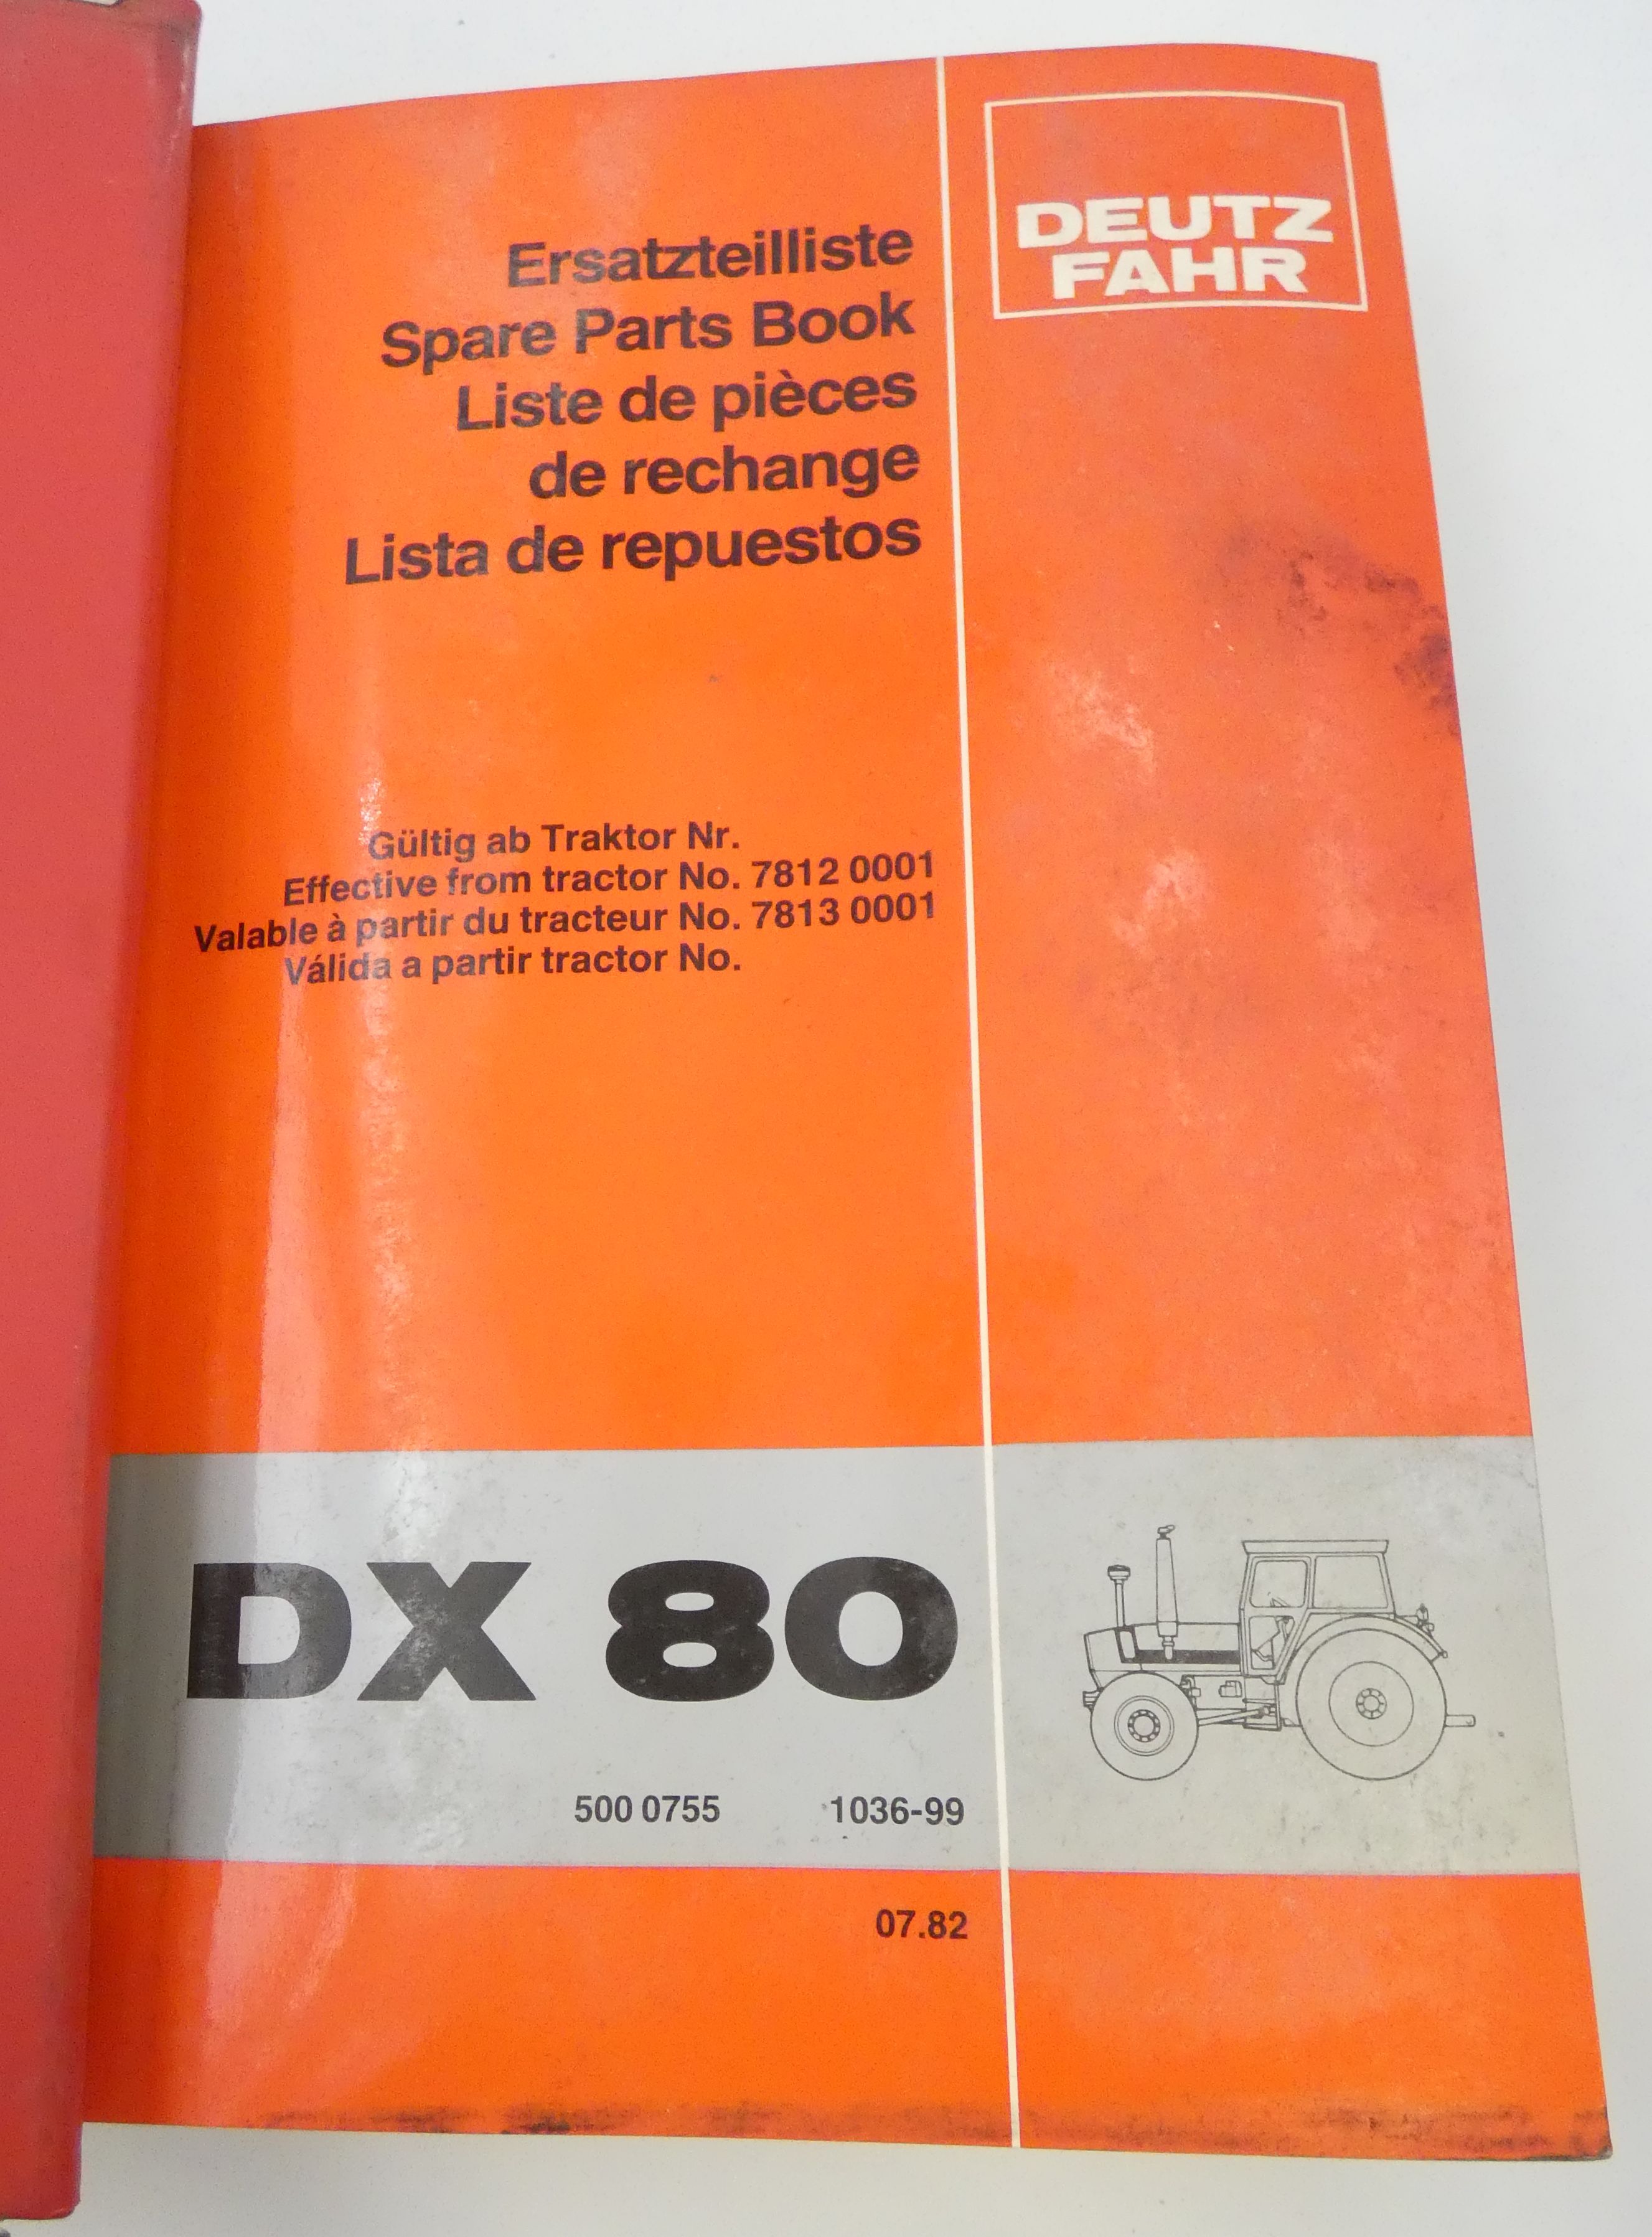 Deutz-Fahr DX80, DX92 spare part book